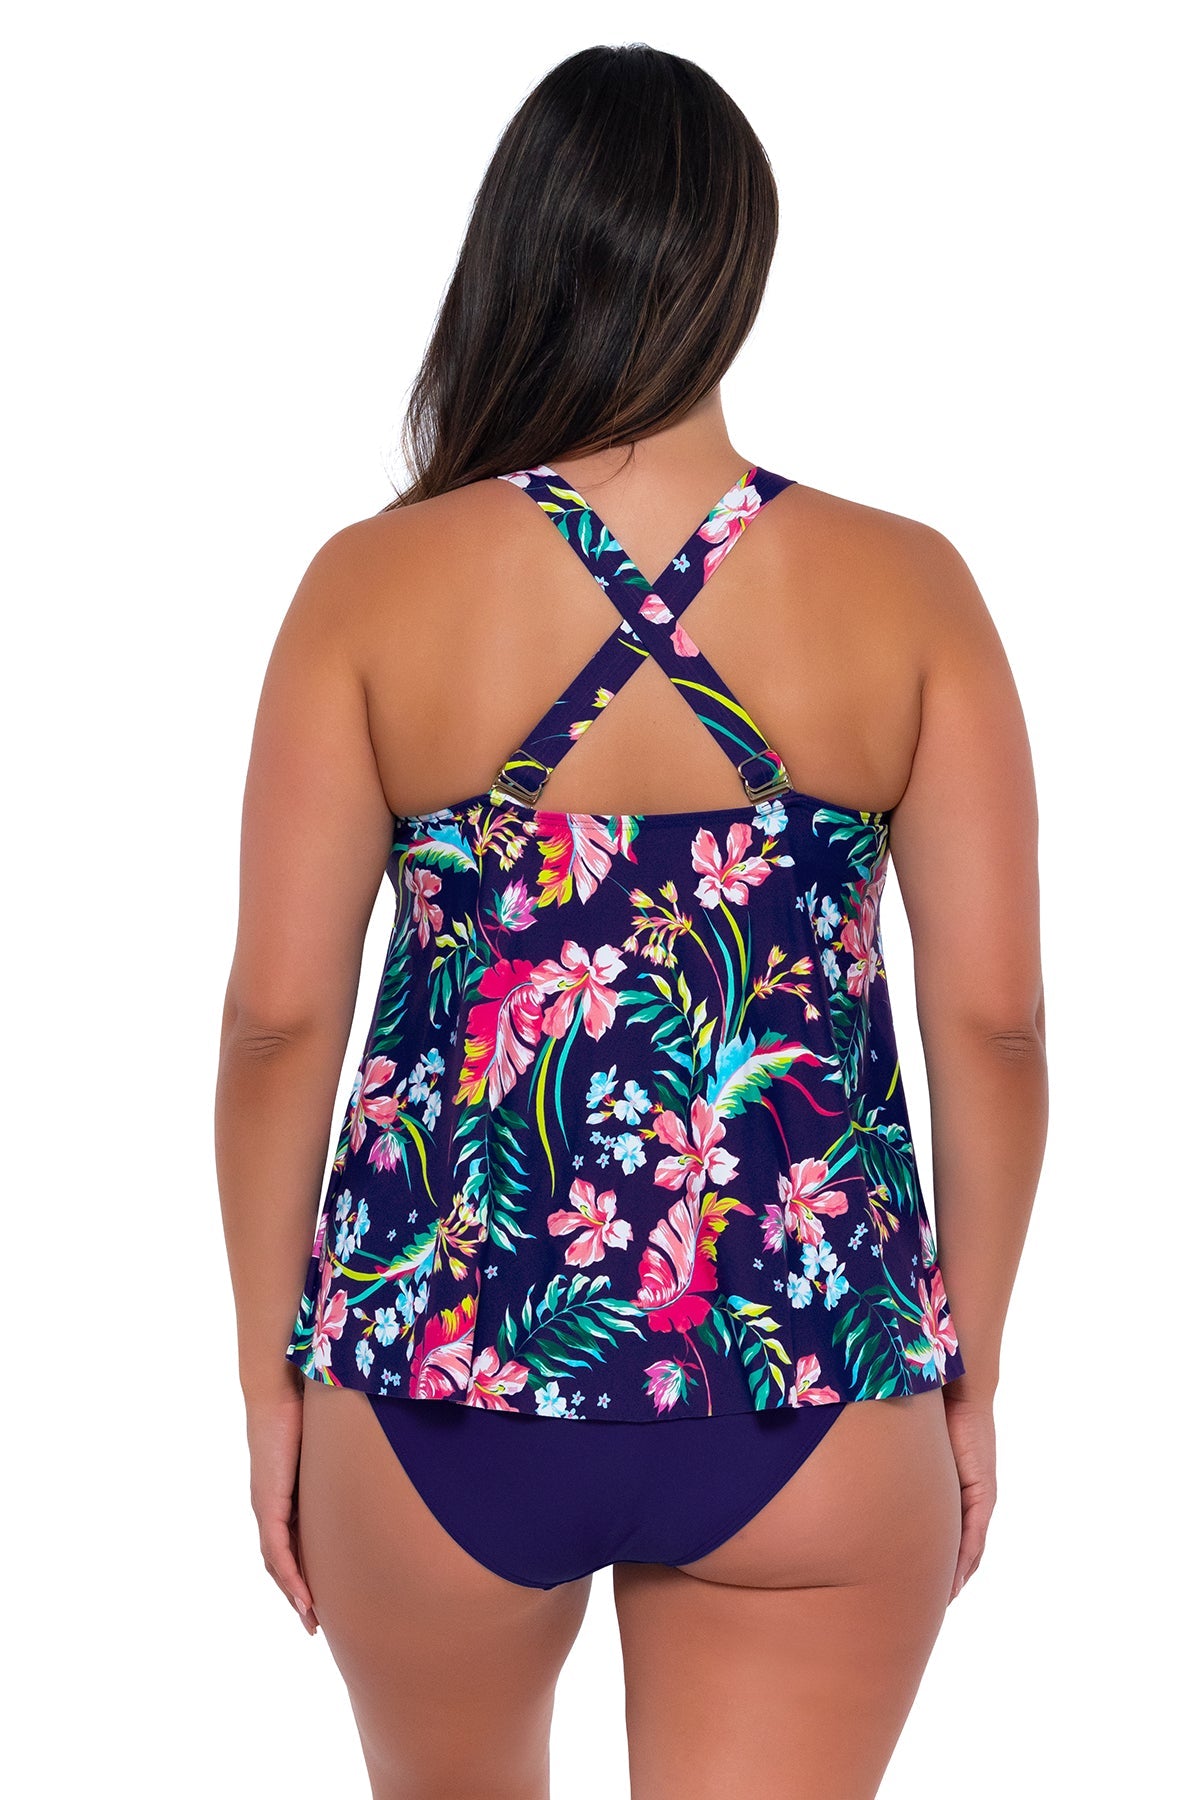 Sunsets Women's Swimwear Escape Island Getaway Sadie Tankini Bikini Top